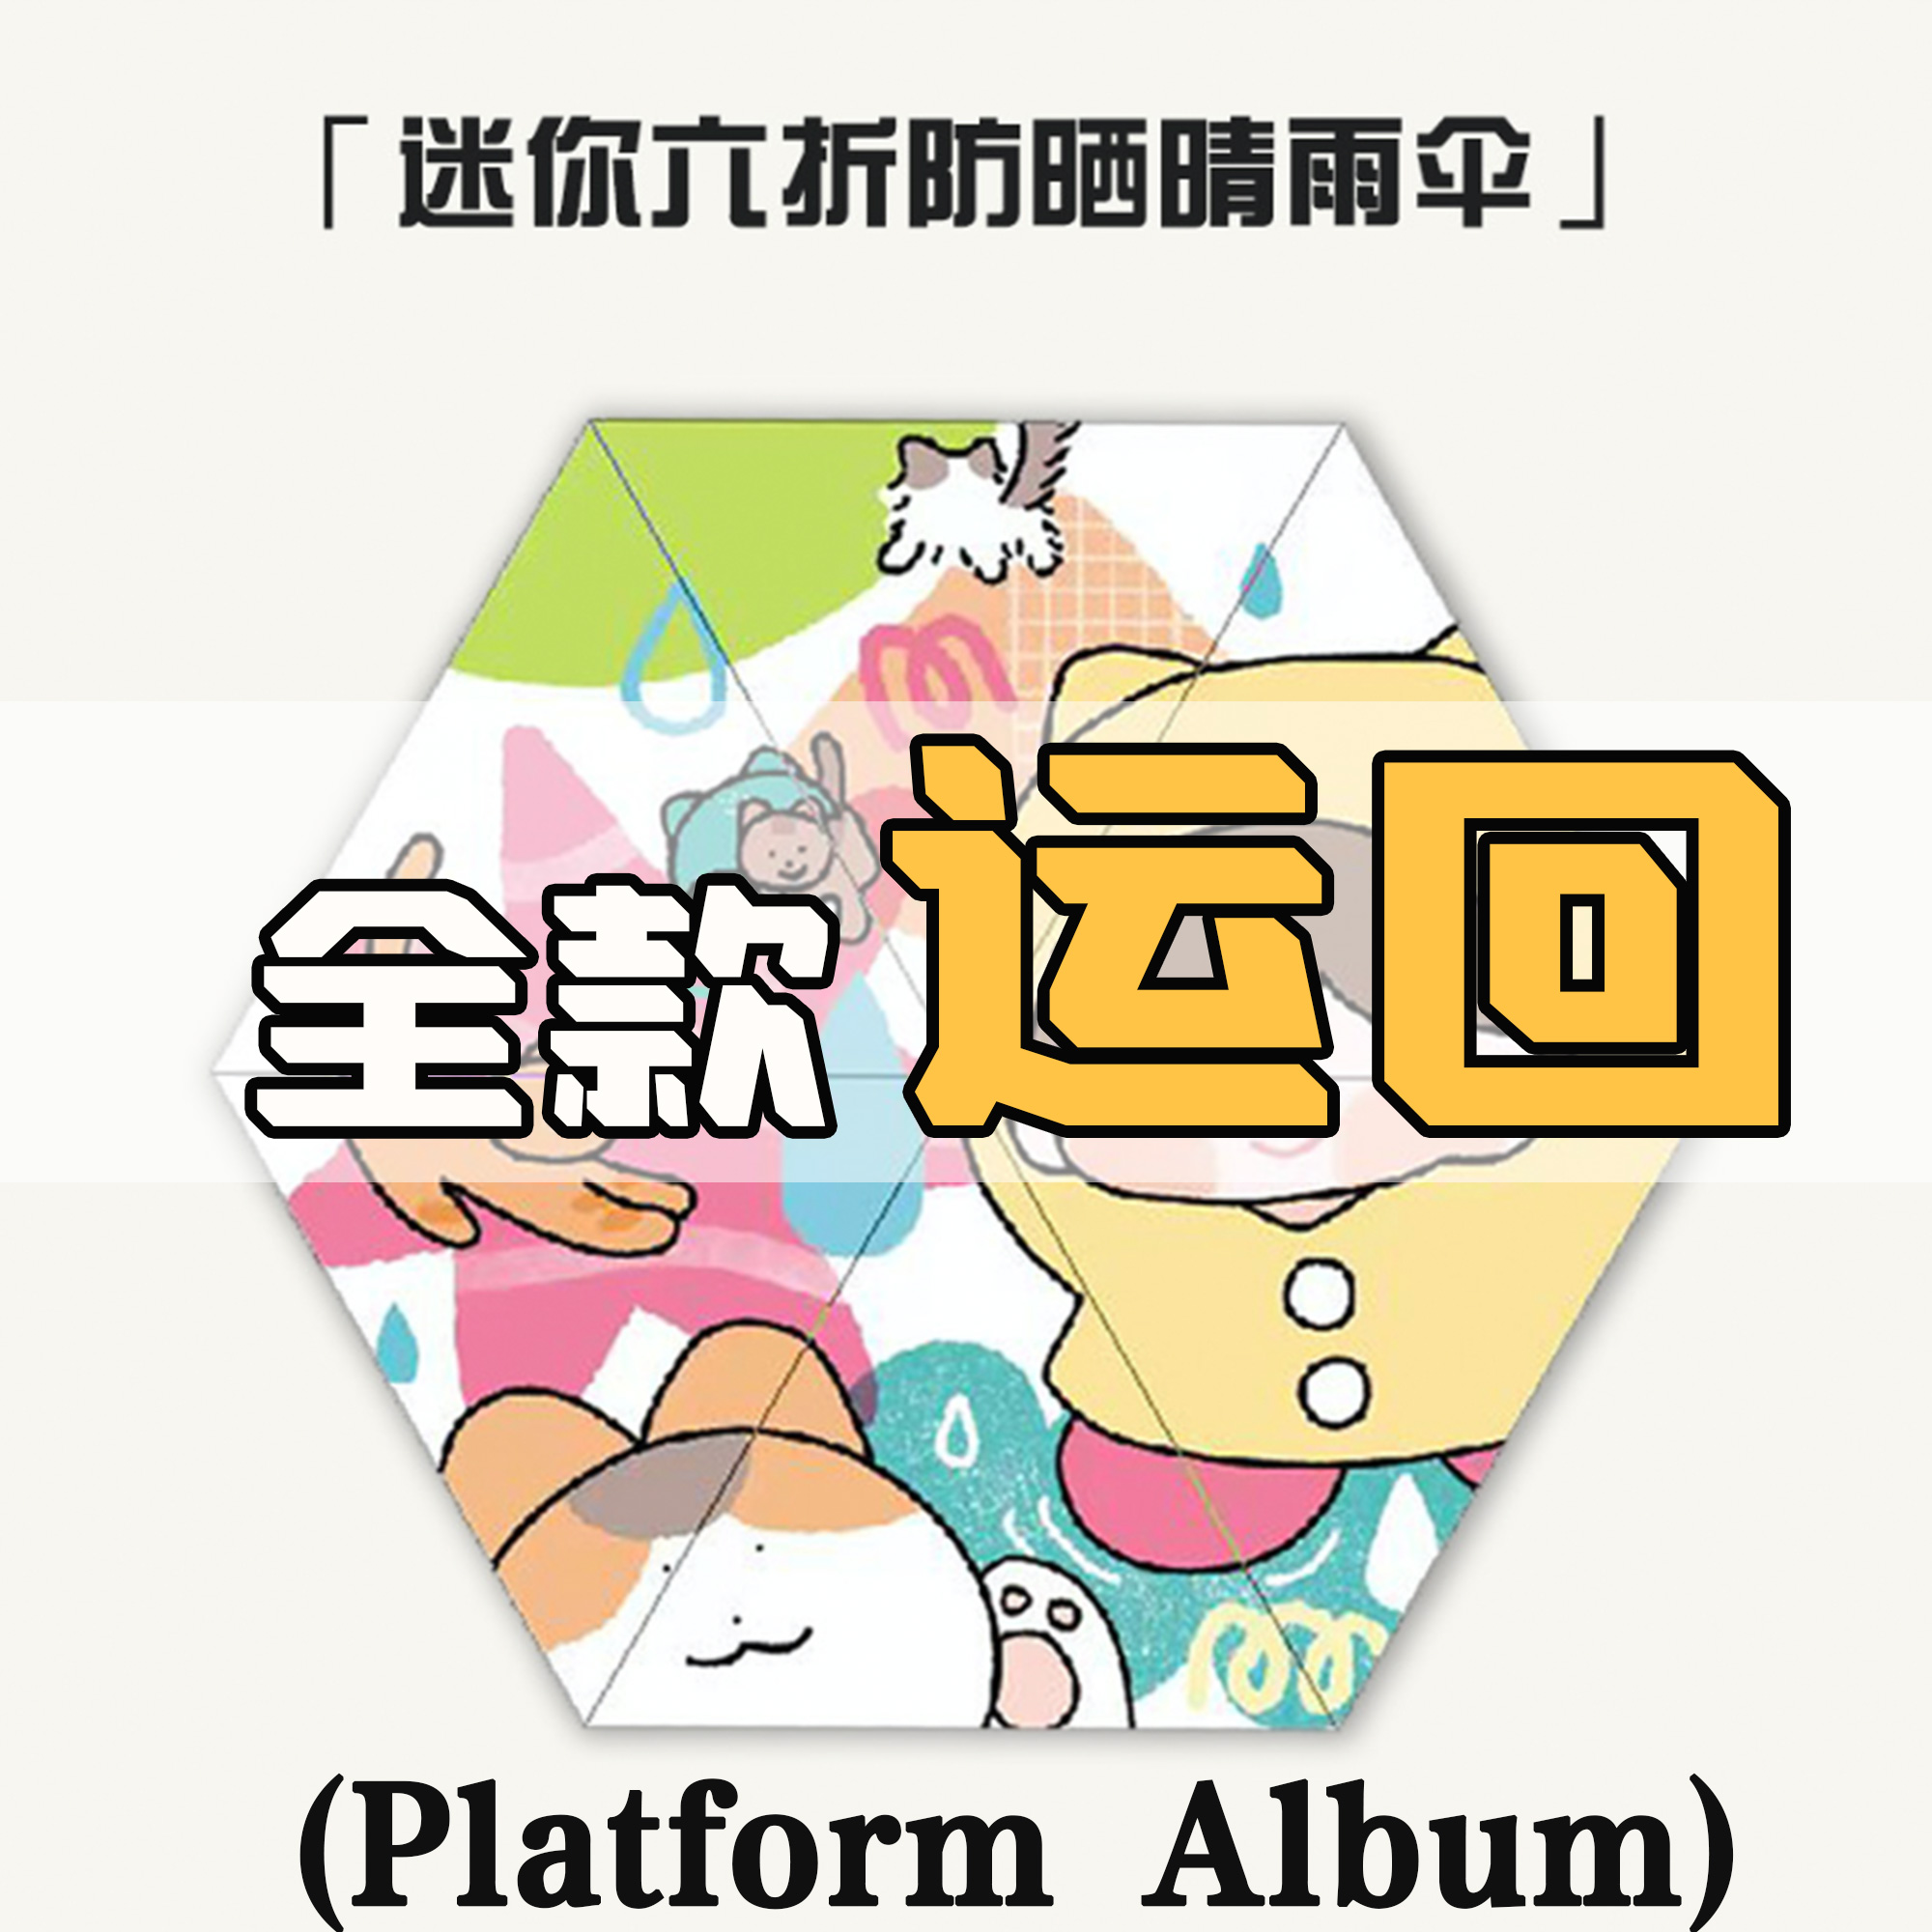 [全款 KDmini晴雨伞 特典专]KANG DANIEL - 迷你4辑 [REALIEZ] (Platform Album) _姜丹尼尔吧_likecat